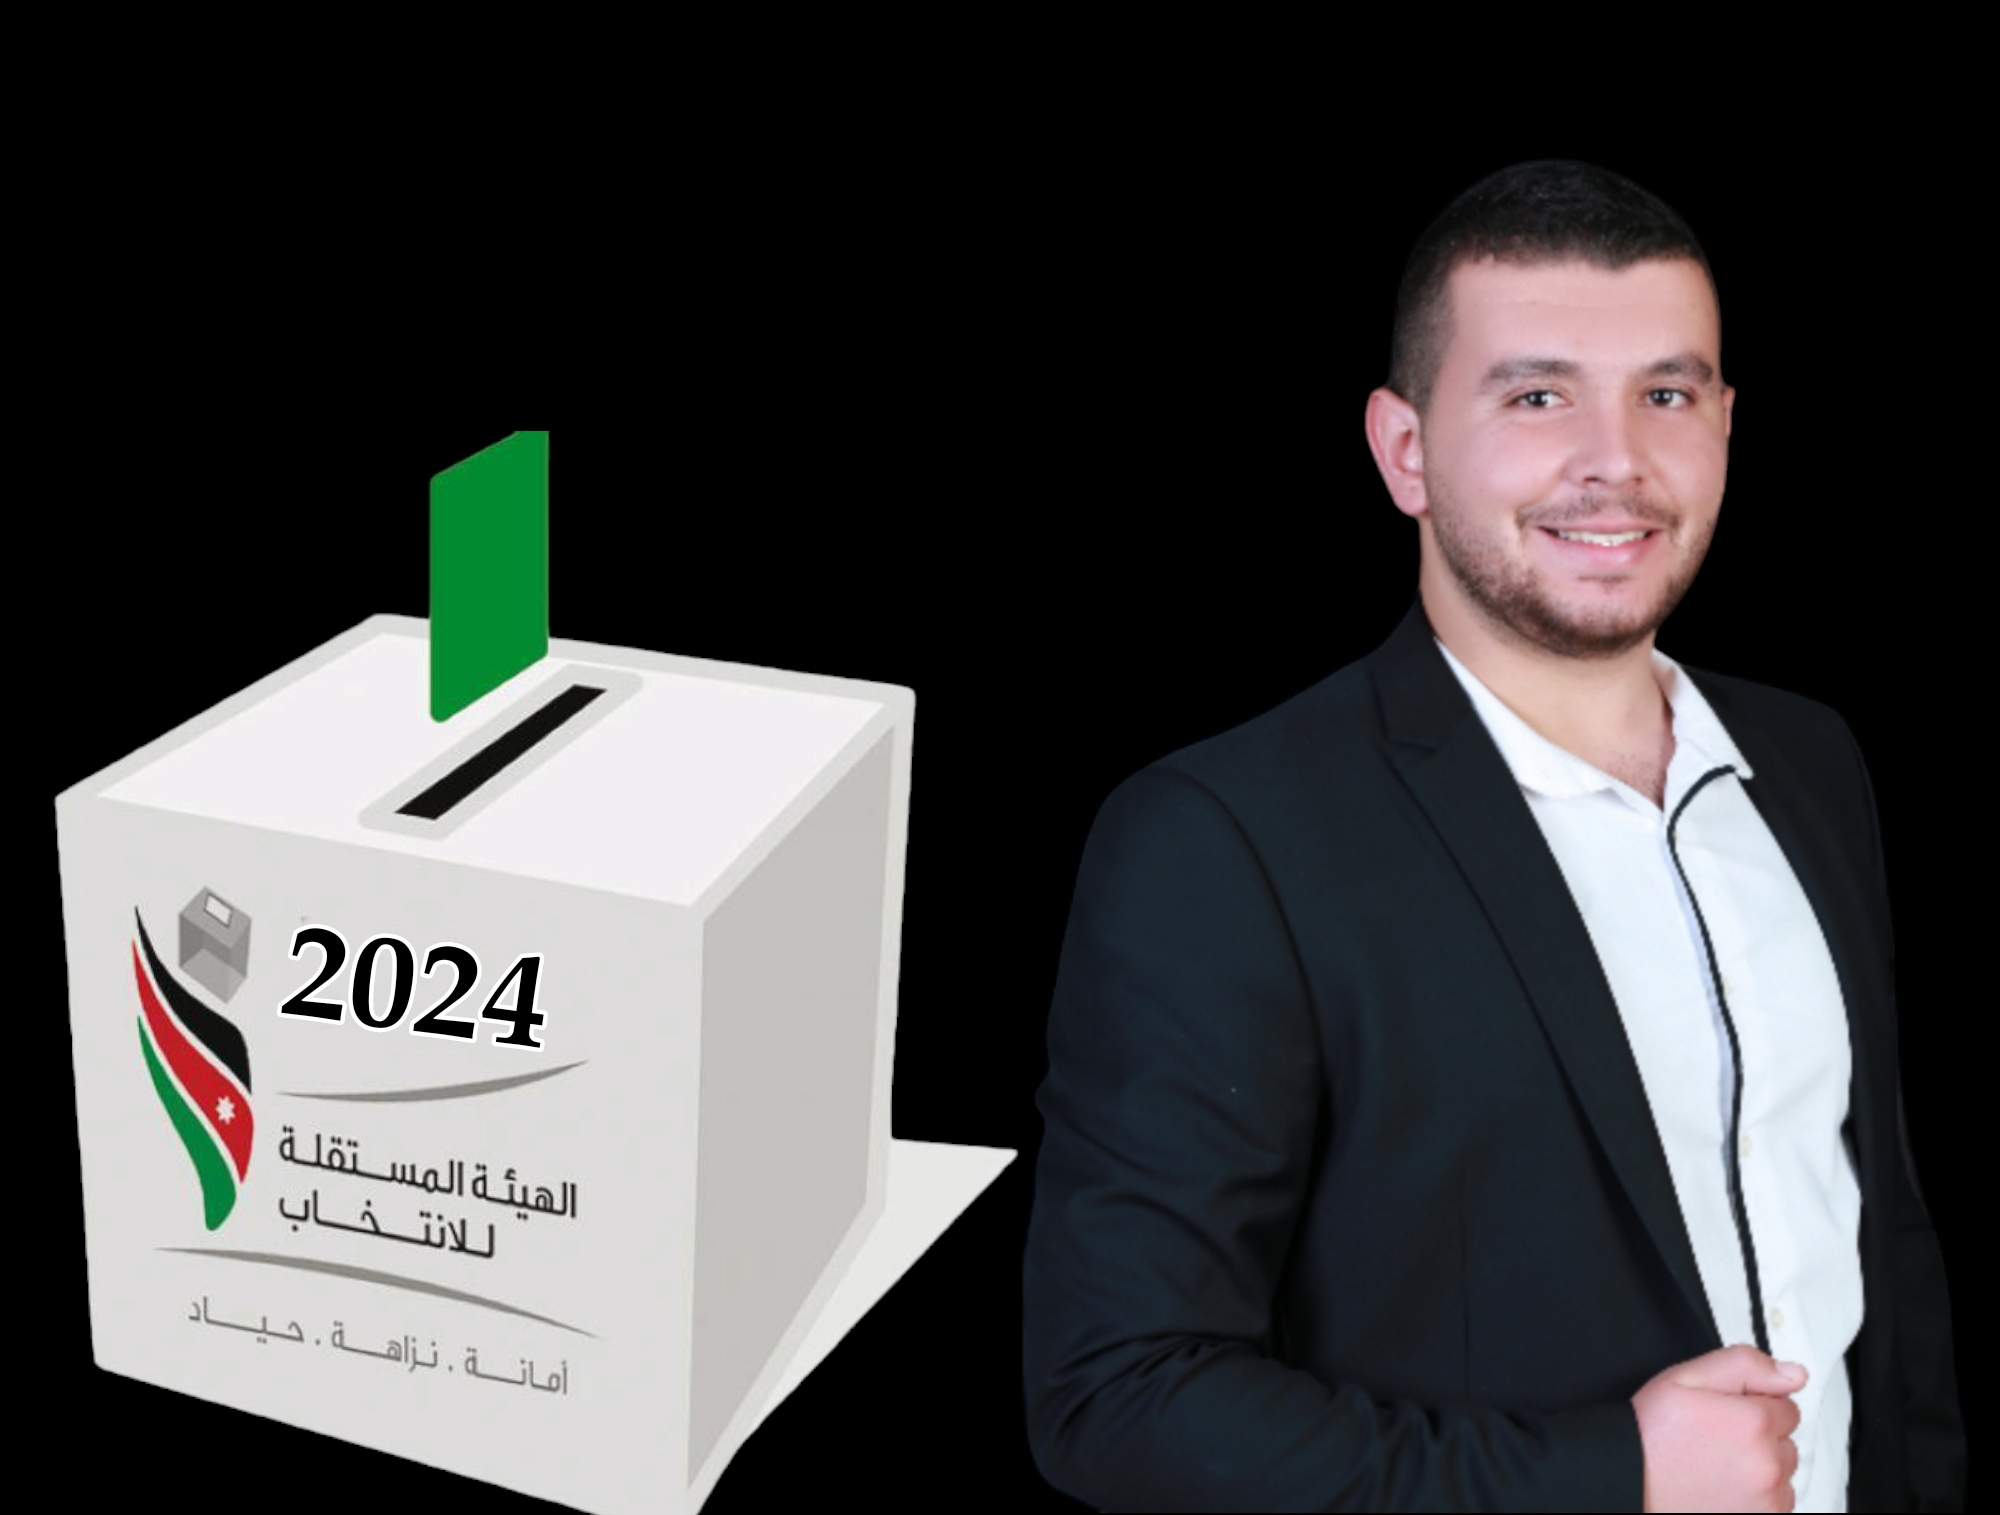 دور الإنتخابات الحزبية في تعزيز الديمقراطية في الأردن